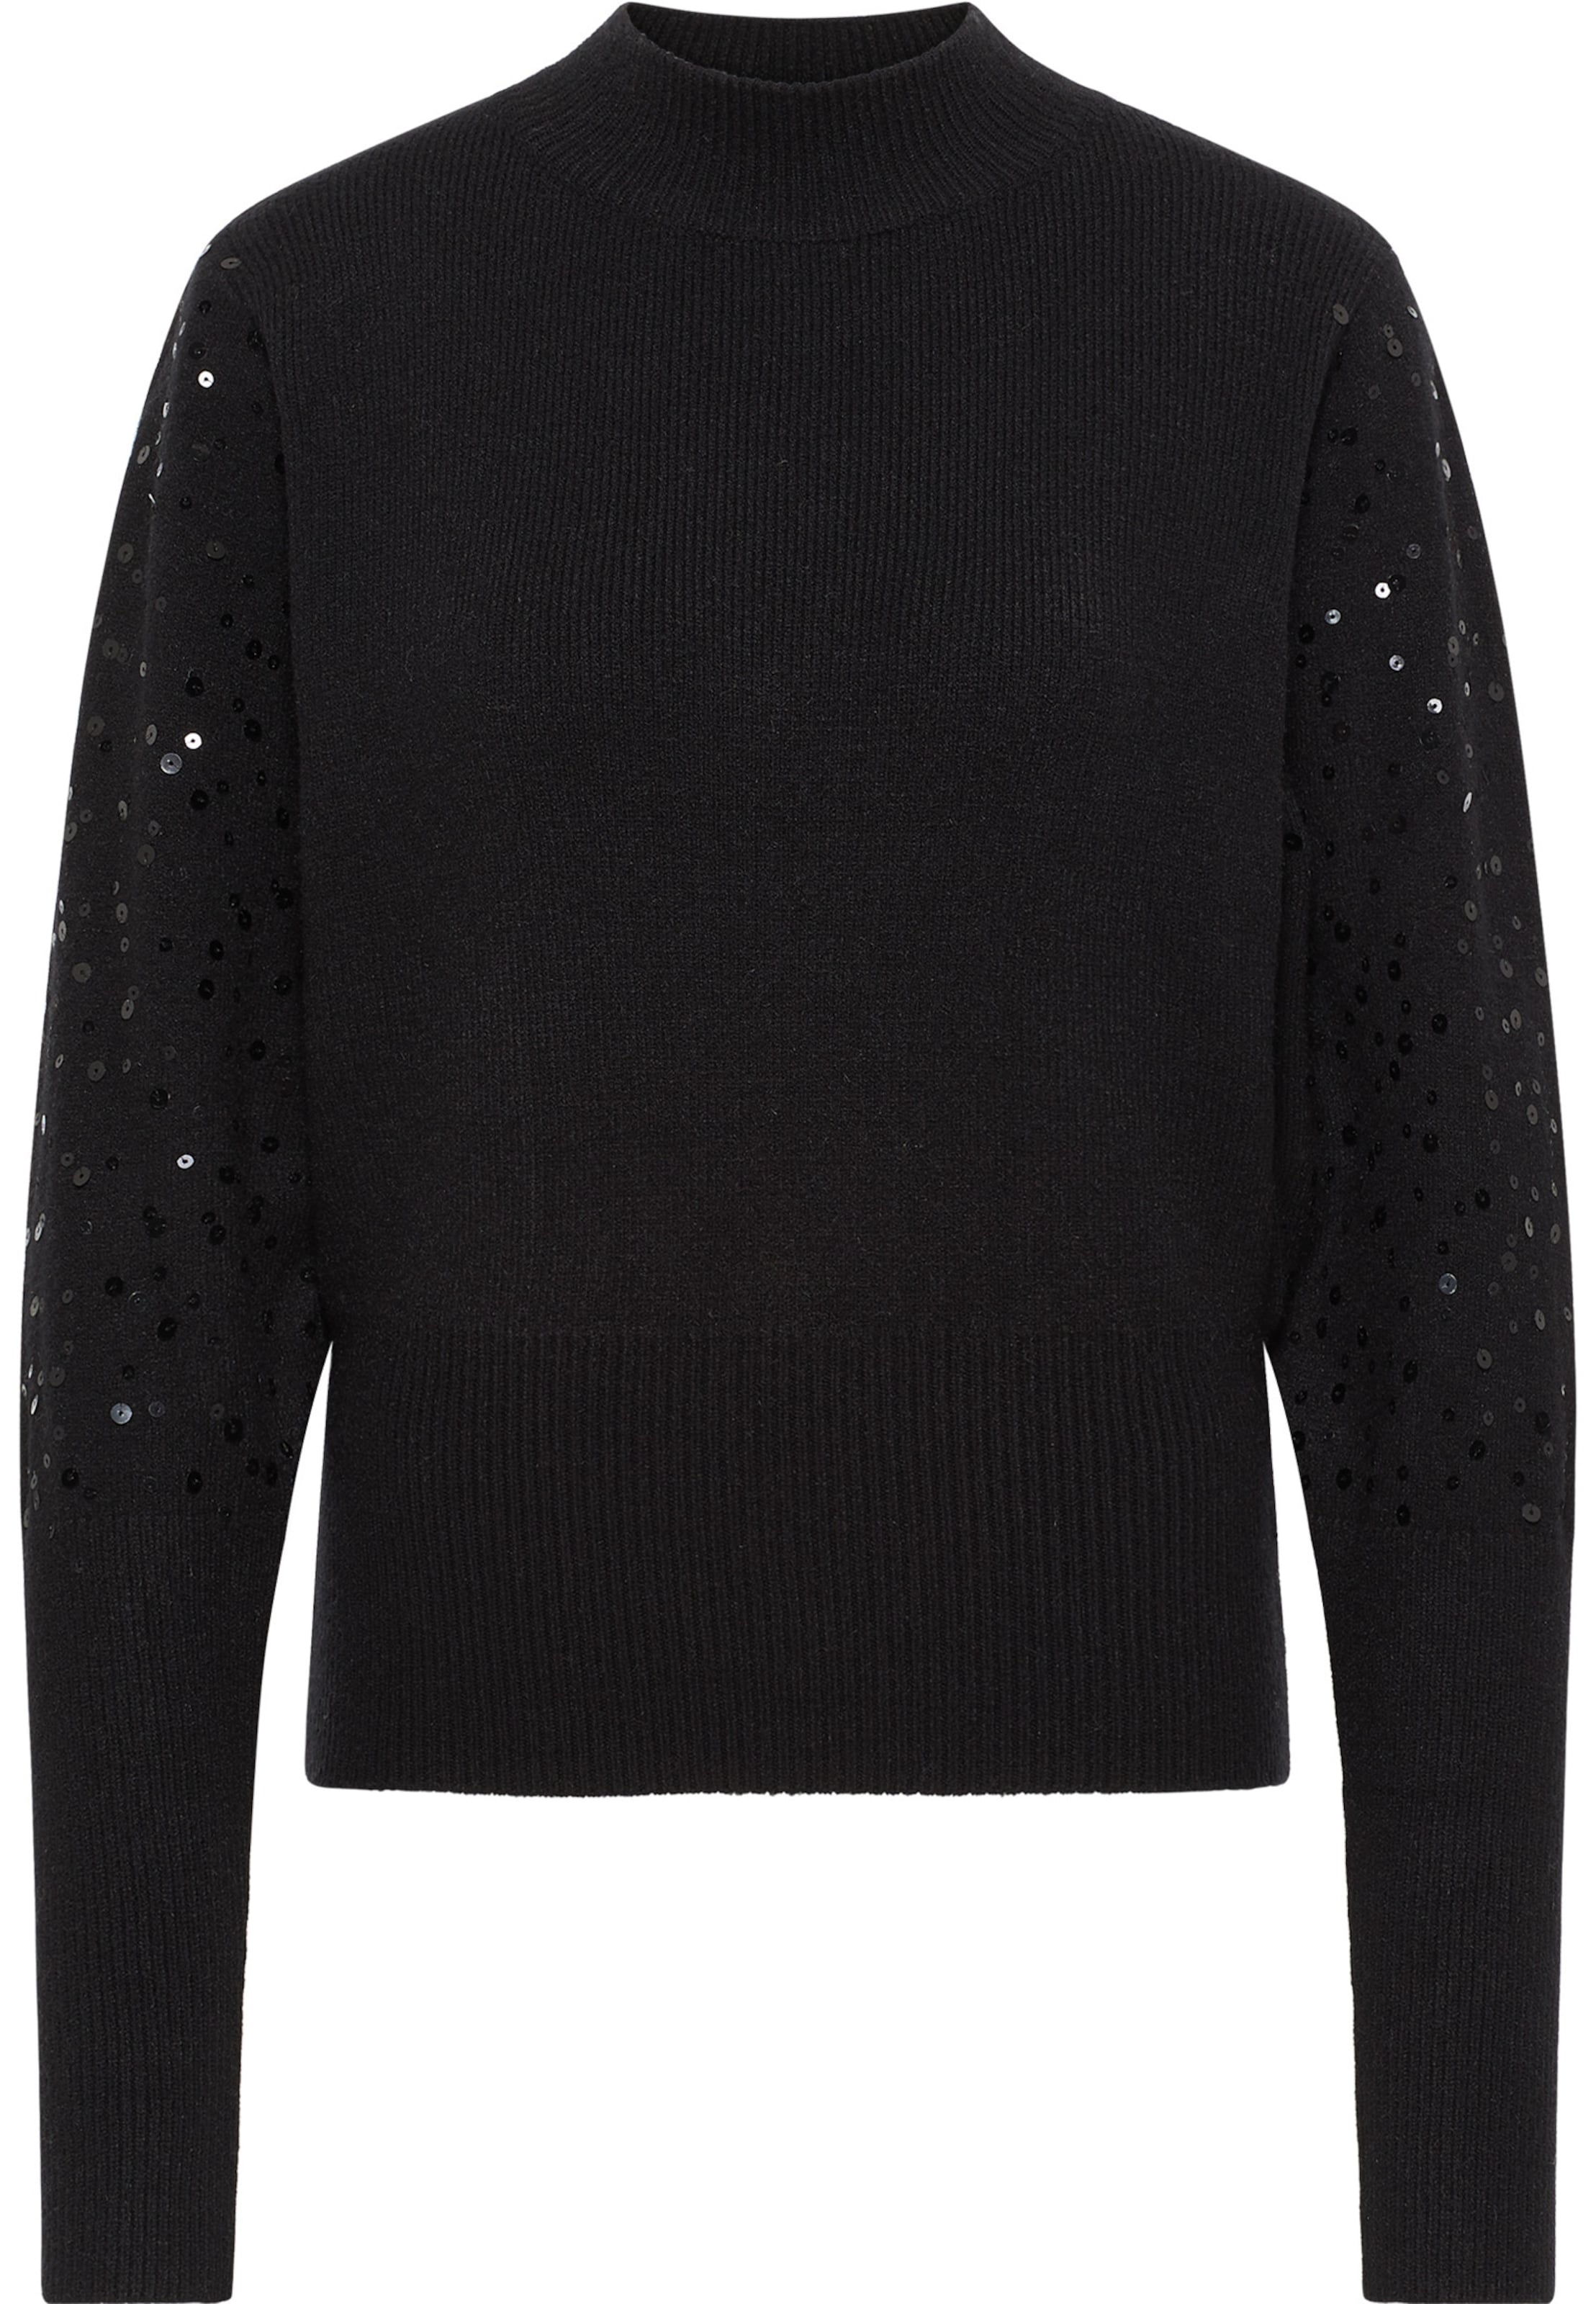 DAMEN Pullovers & Sweatshirts Pailletten Rabatt 83 % Millenium Pullover Mehrfarbig Einheitlich 